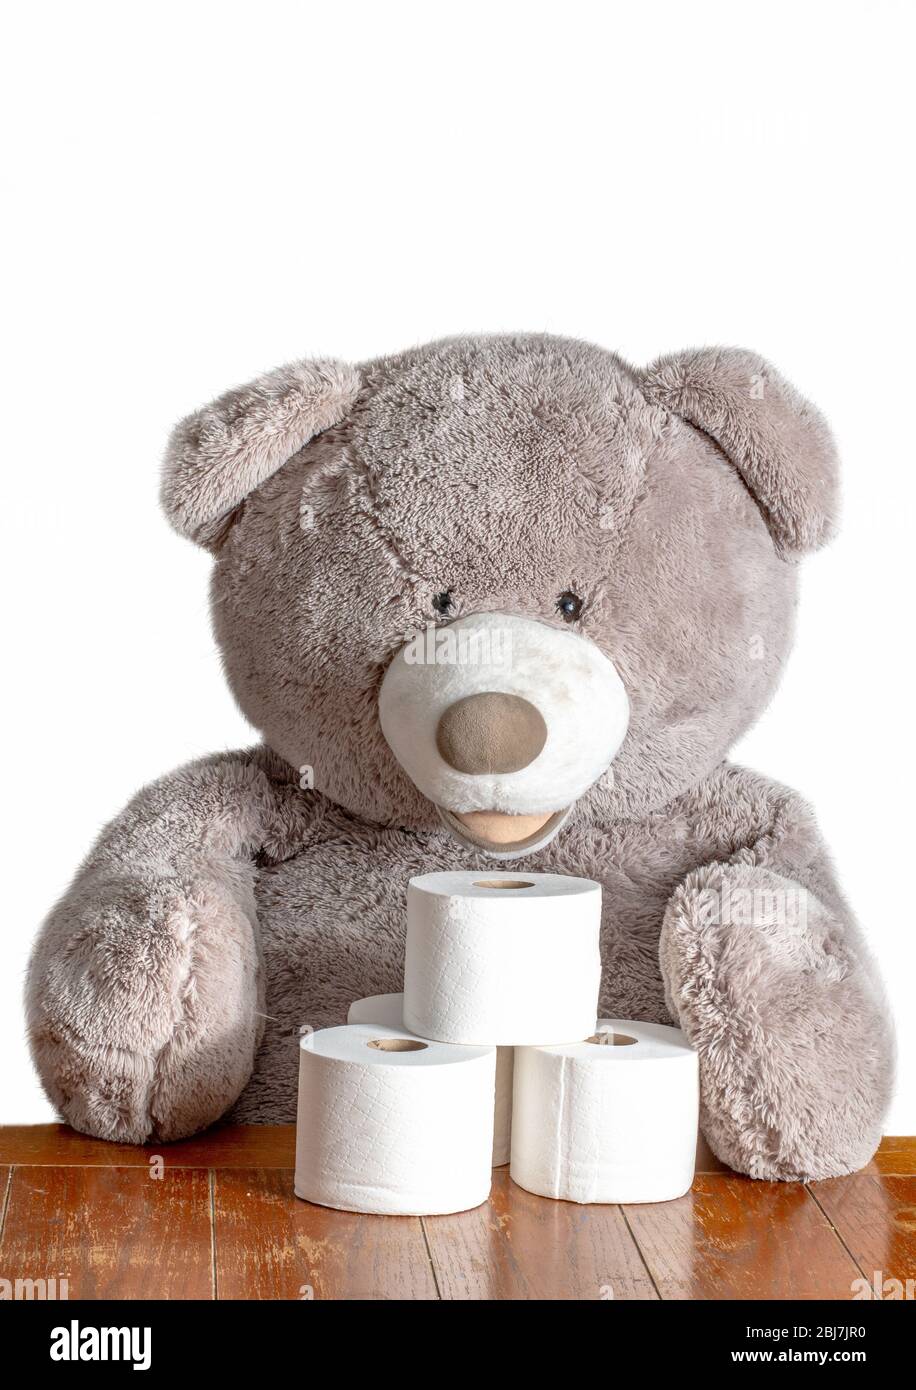 Un oso de peluche grande se sienta con rollos de papel higiénico, diciendo  a todos que dejen de acaparar y compartir el TP! Fotografía de stock - Alamy